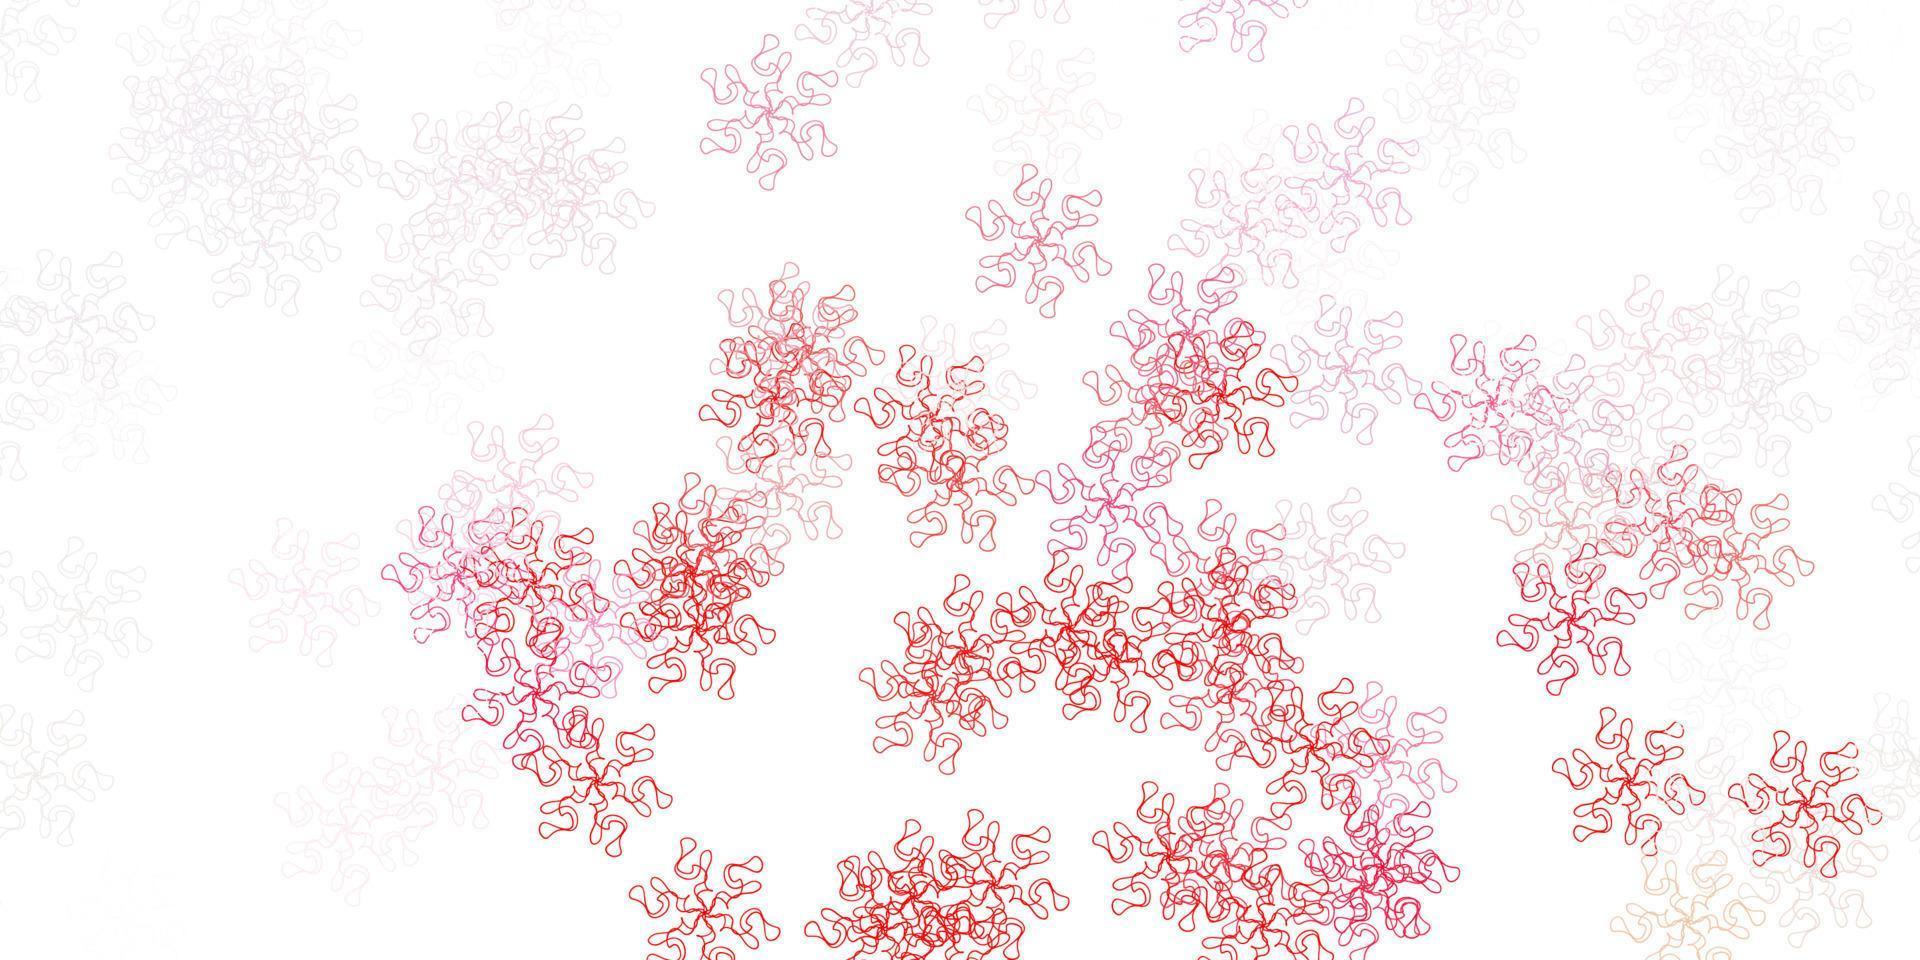 modello di doodle vettoriale rosso chiaro con fiori.